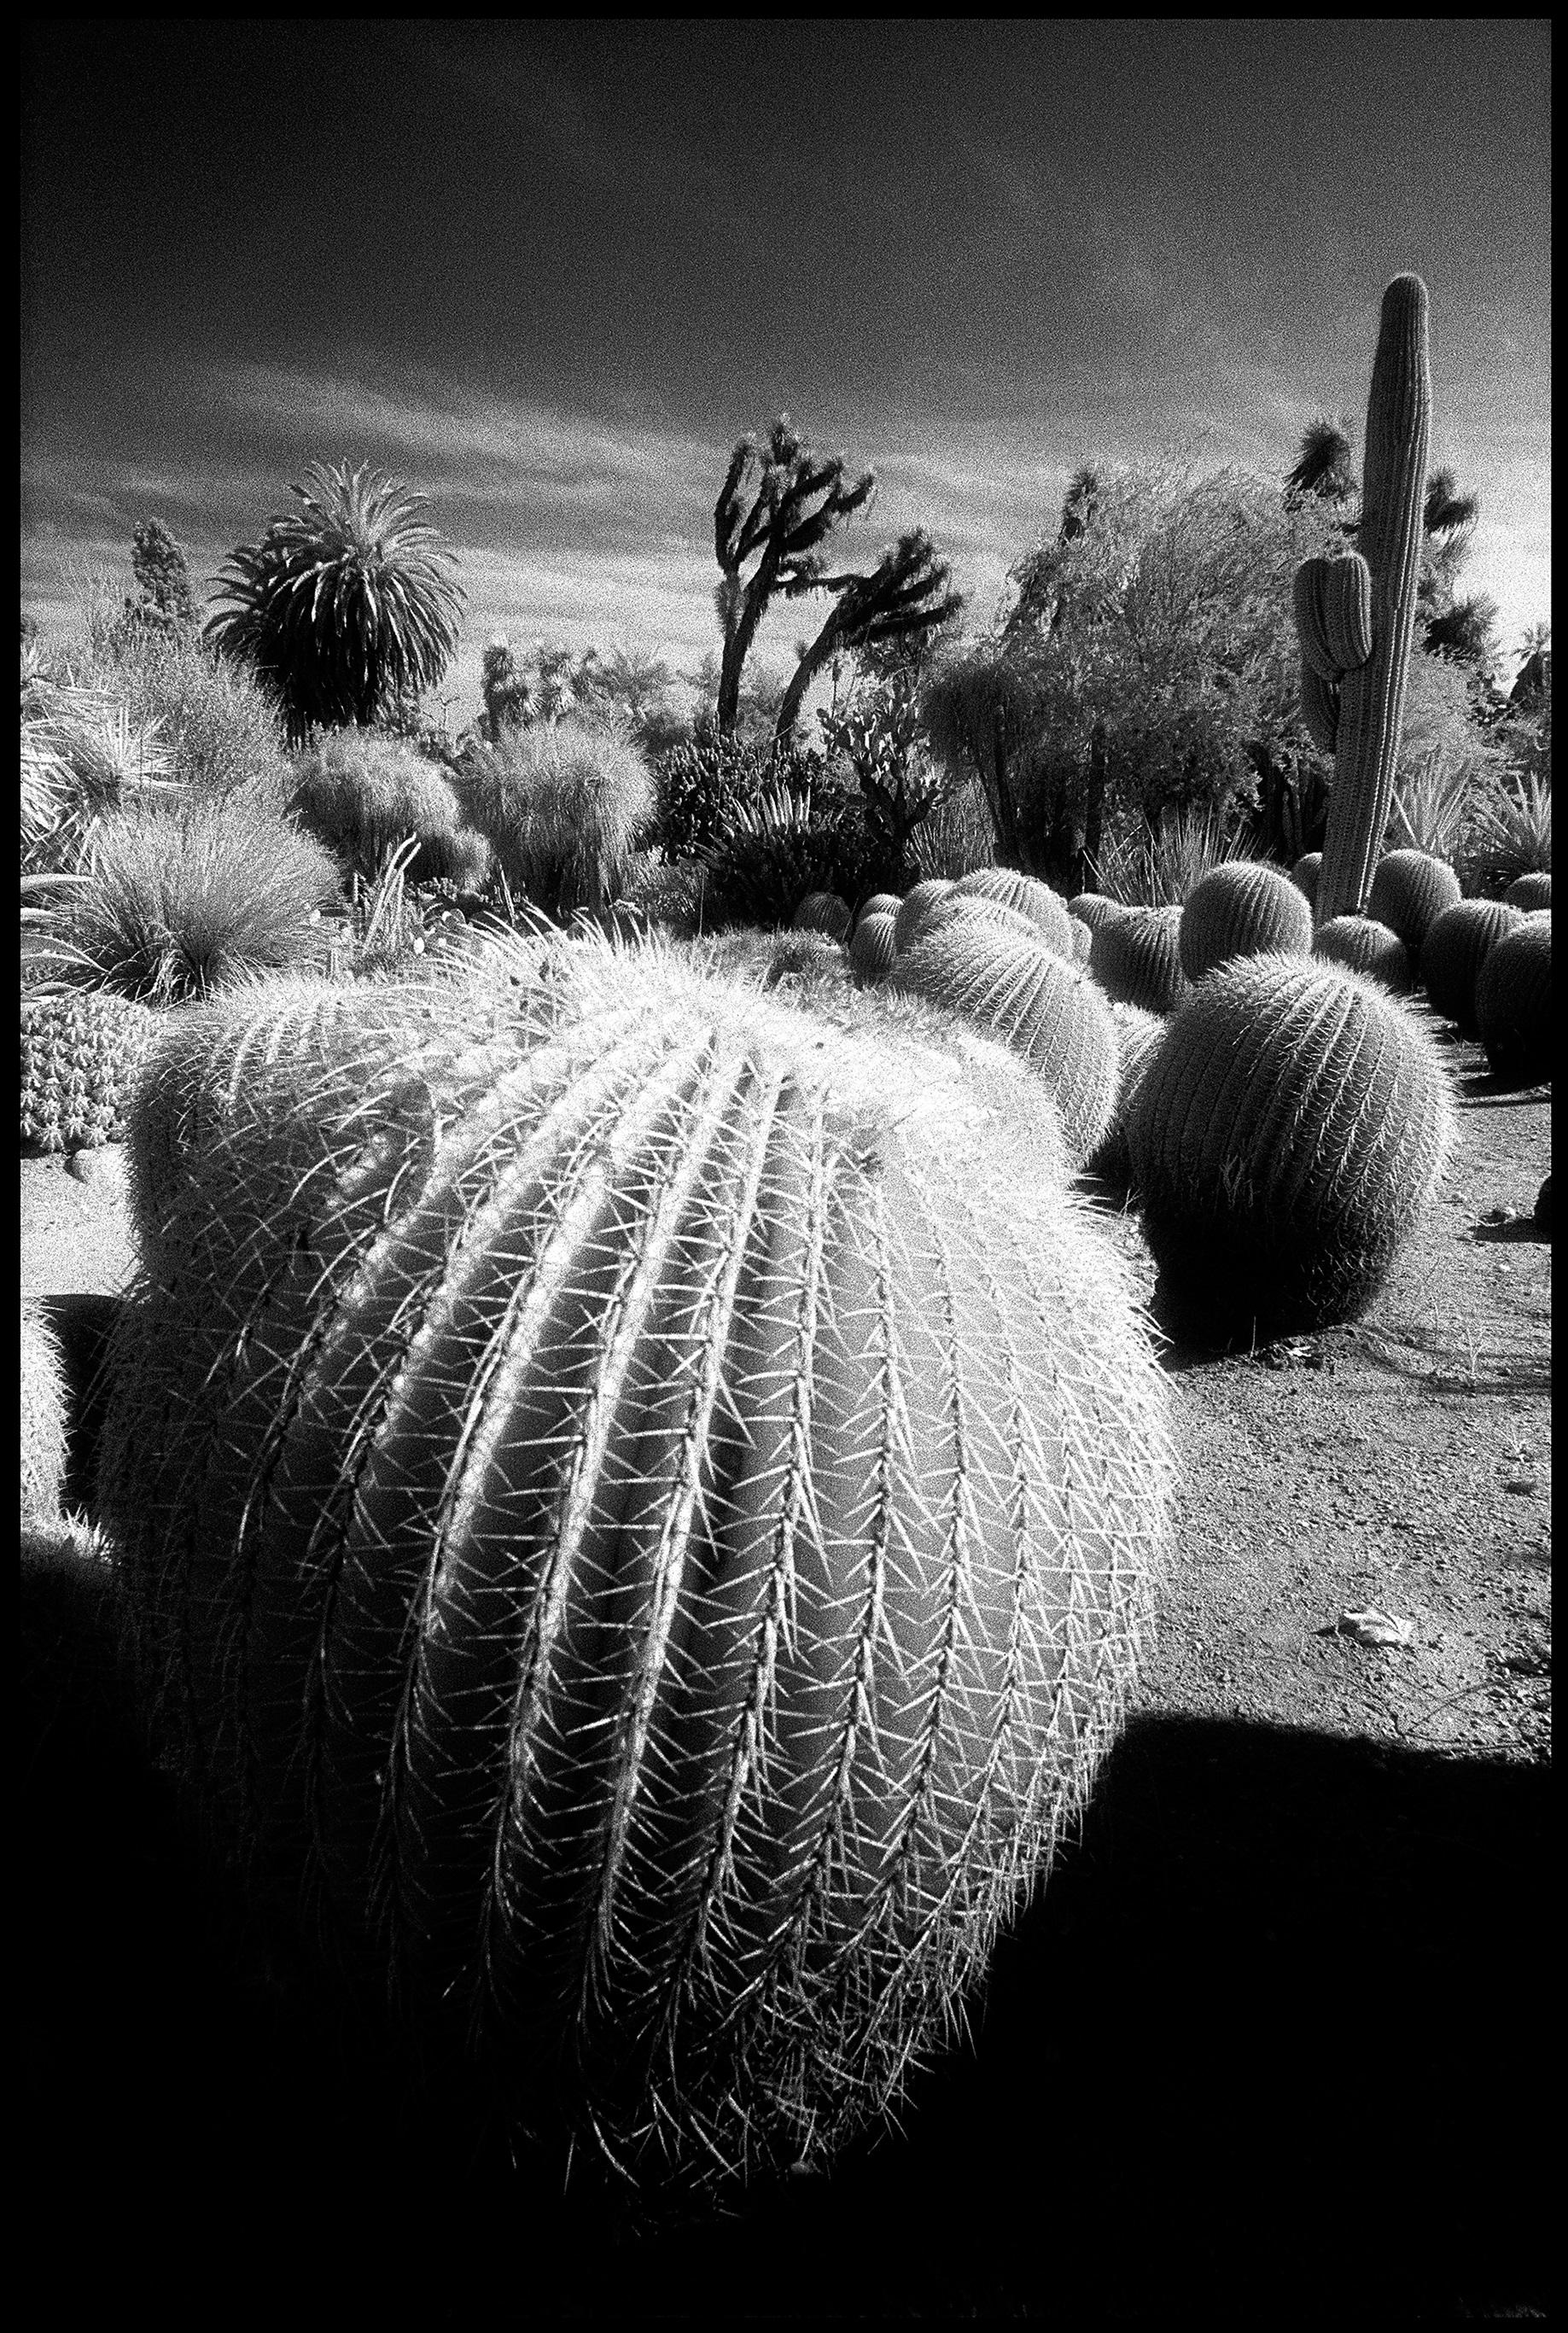 Black and White Photograph Edward Alfano - Cactus Garden at Huntington Gardens - Photographie de paysage surréaliste contemporaine 